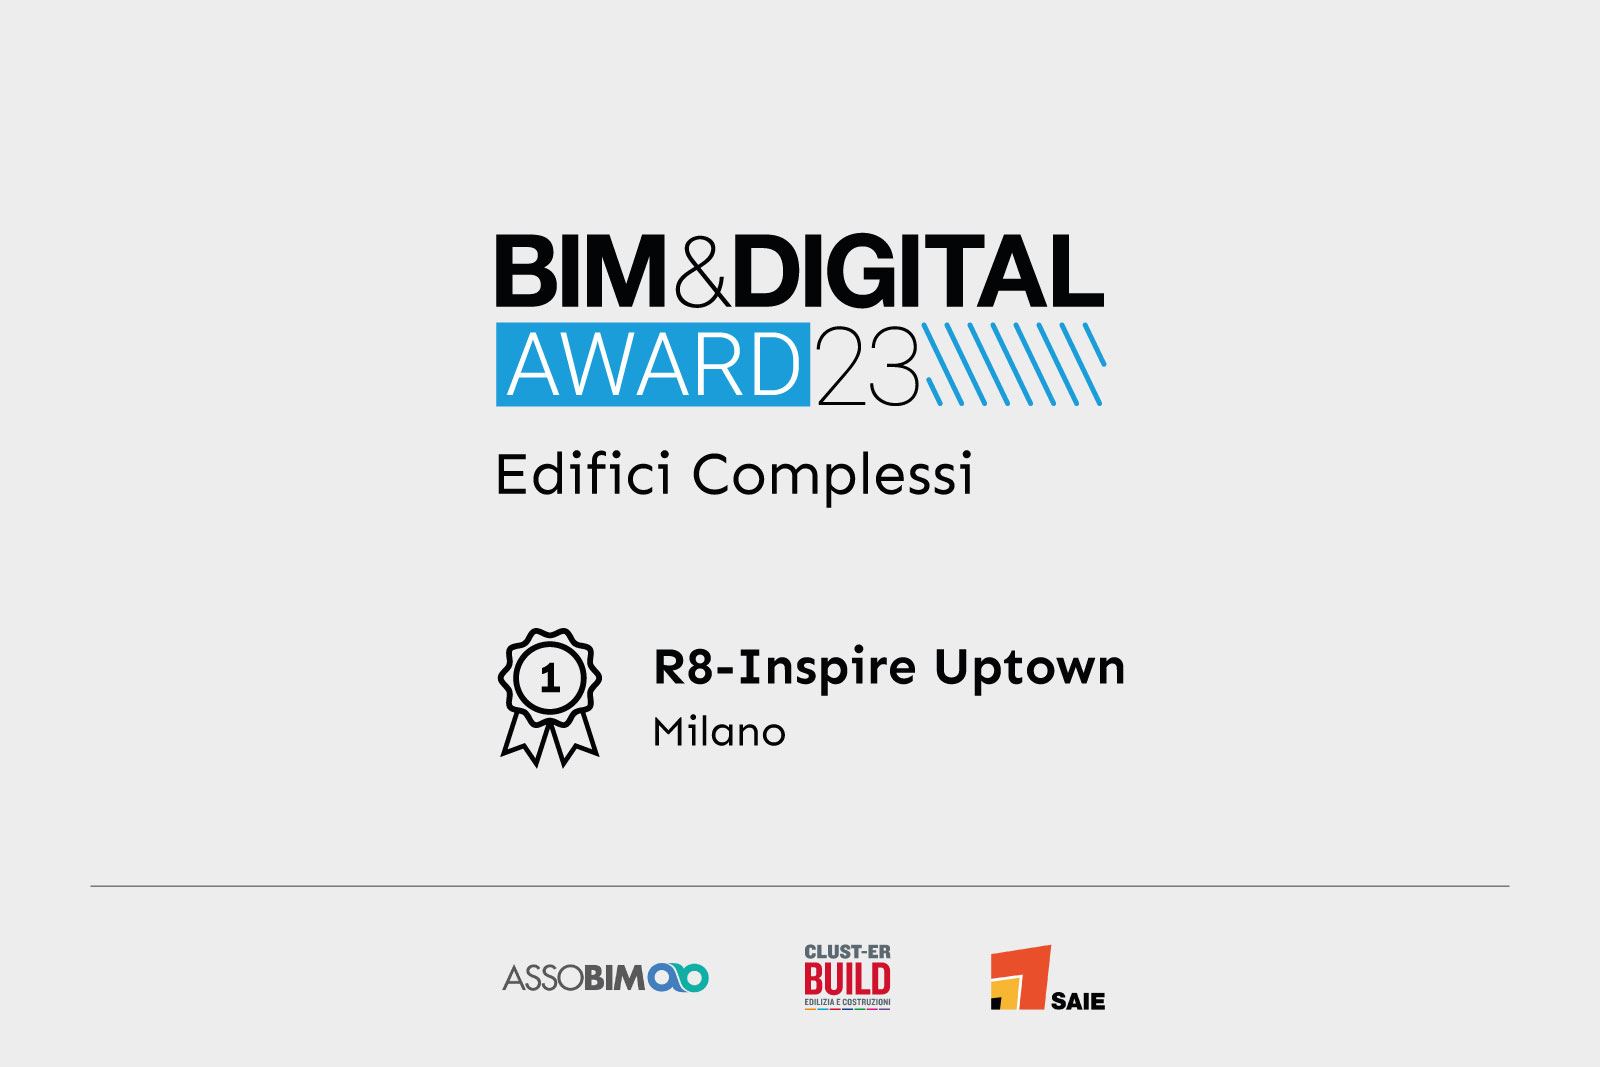 bim&digital award 2023, edifici complessi, primo premio, award winner, r8 inspire uptown, studio architettura premiato